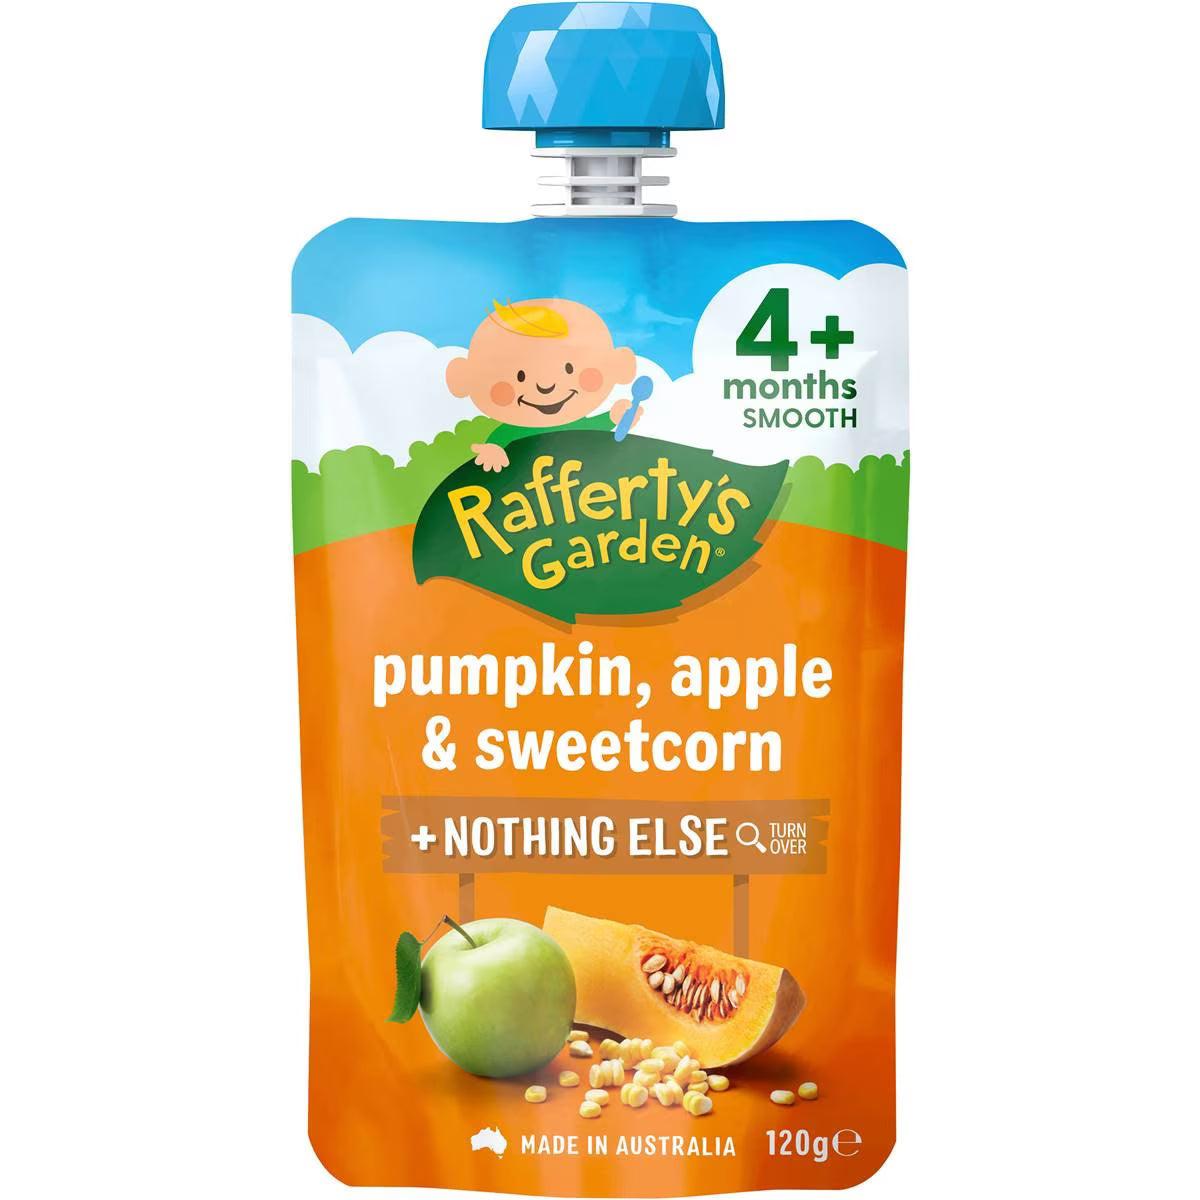 Rafferty's Garden Pumpkin, Apple & Sweetcorn Pouch 4+ Months 120g